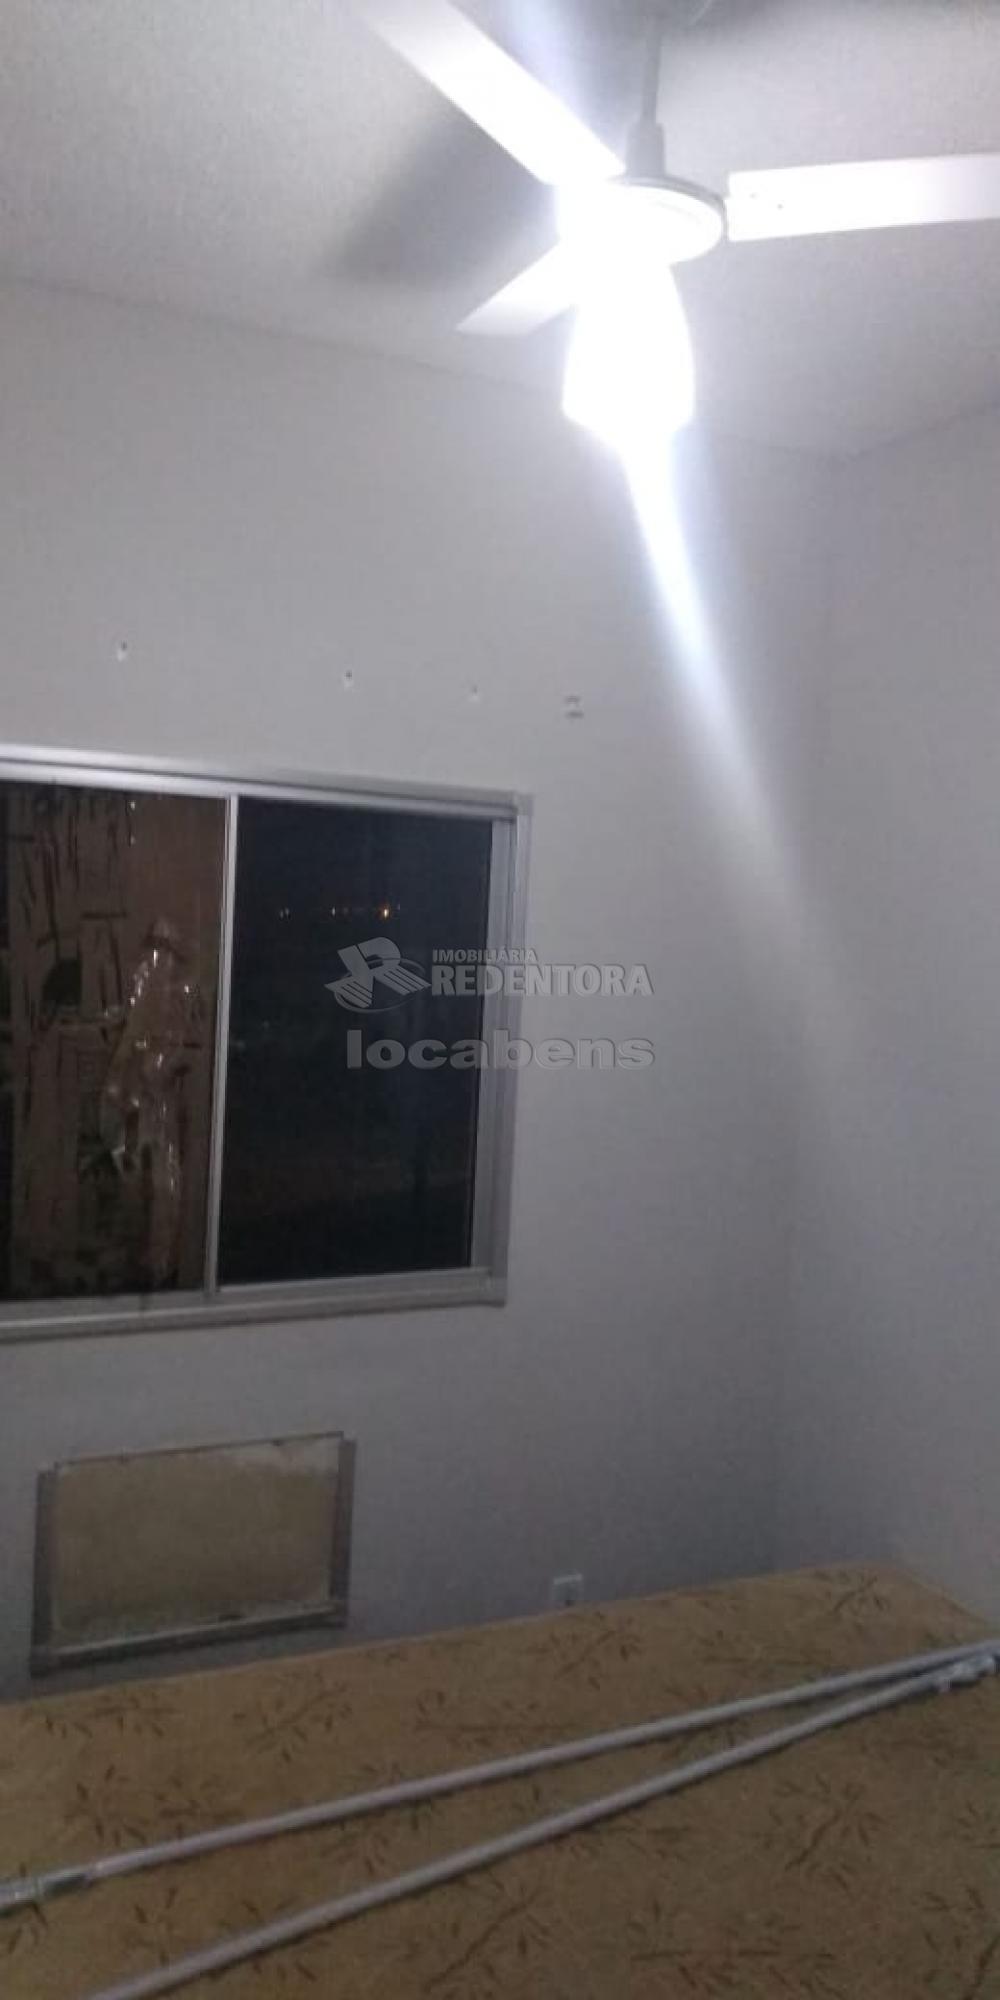 Alugar Apartamento / Padrão em São José do Rio Preto apenas R$ 850,00 - Foto 6